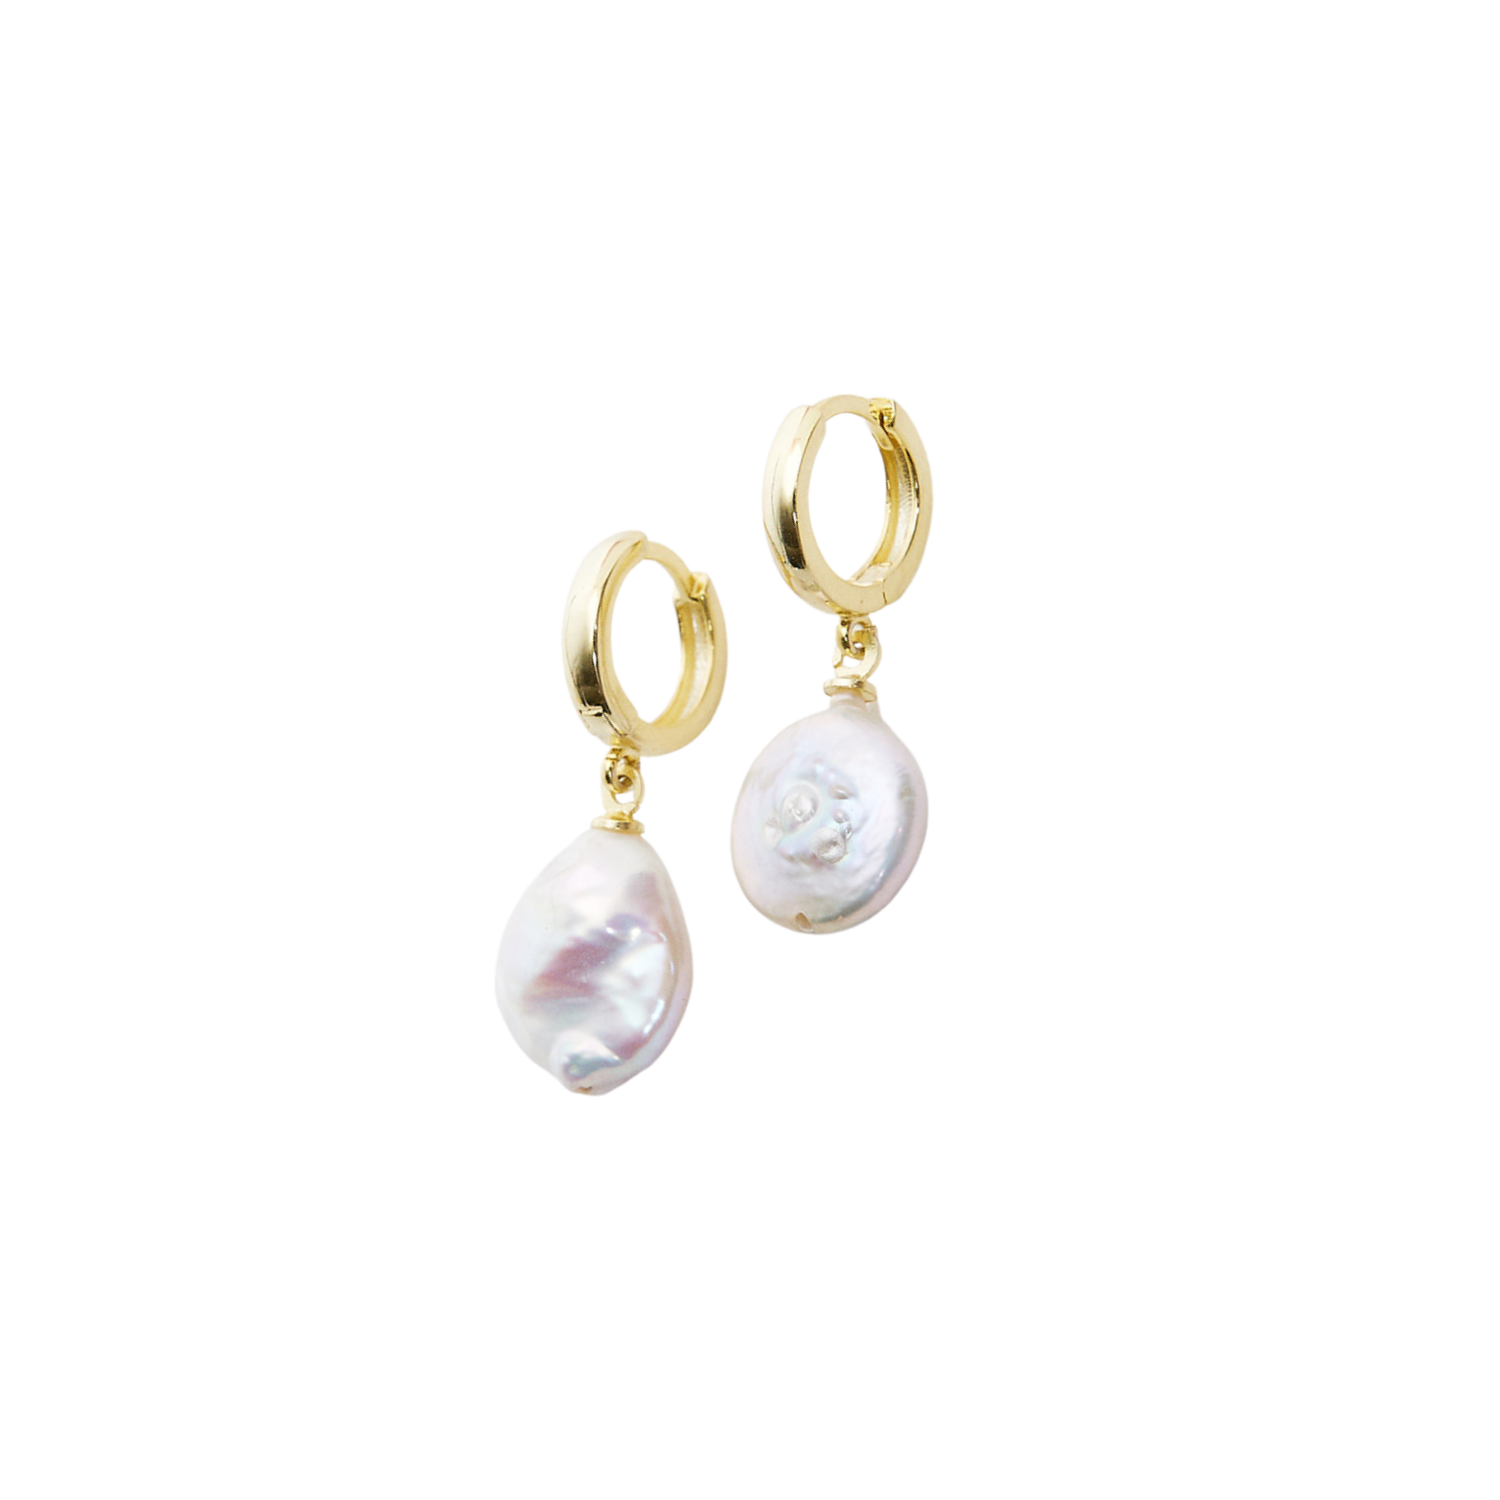 Treated Freshwater Cultured Baroque Pearl Hoop Earrings